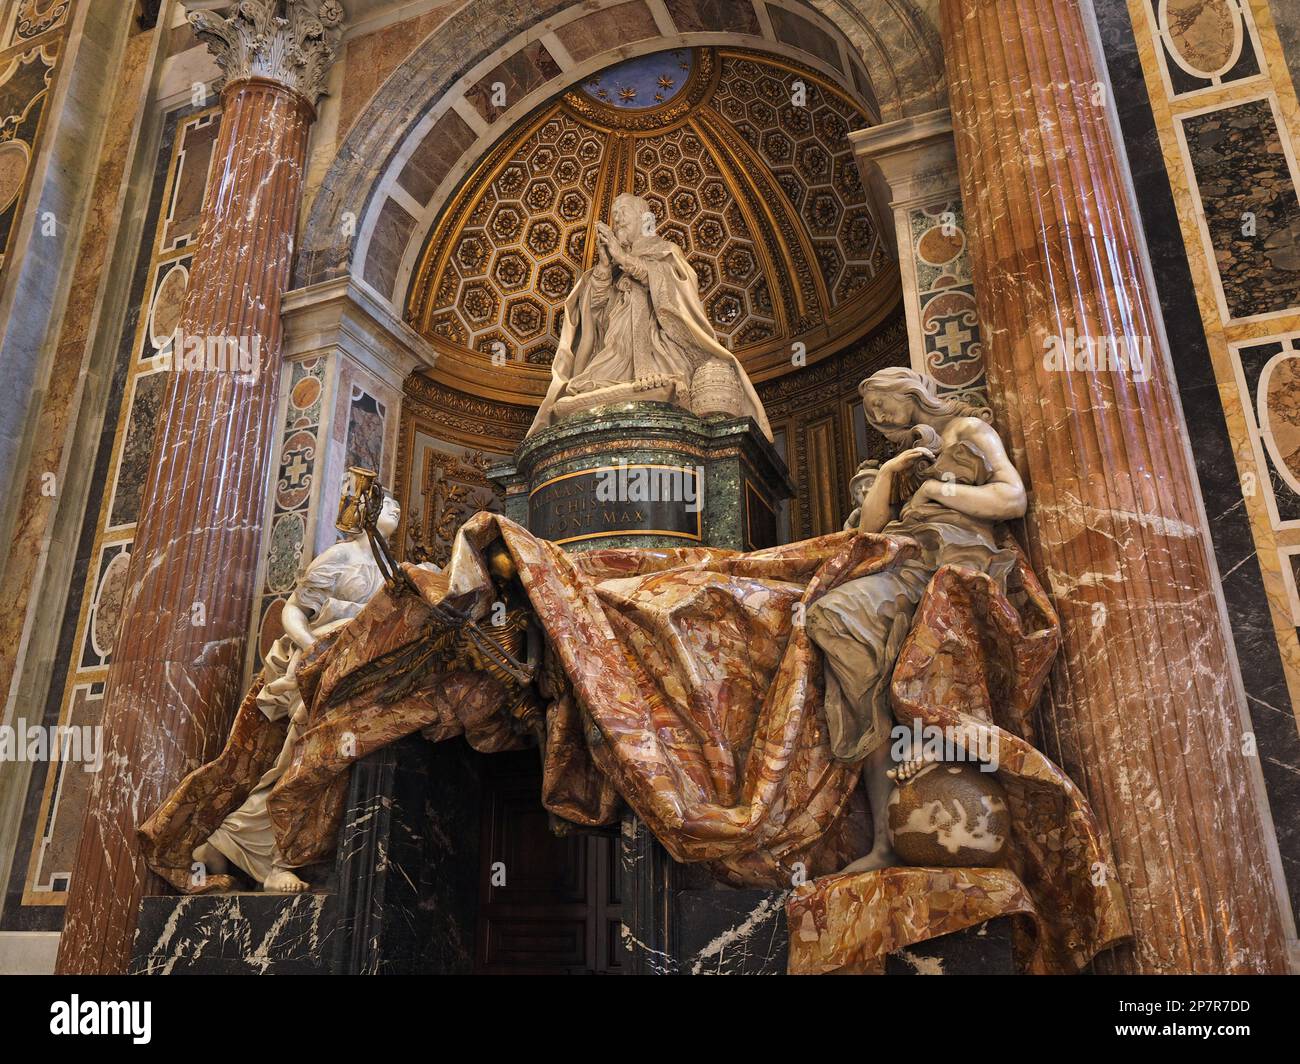 Tombe monument pour le Pape Alexandre VII à la Basilique Saint-Pierre dans la Cité du Vatican, Vatican. La figure de droite est "vérité" et elle était à l'origine nud Banque D'Images